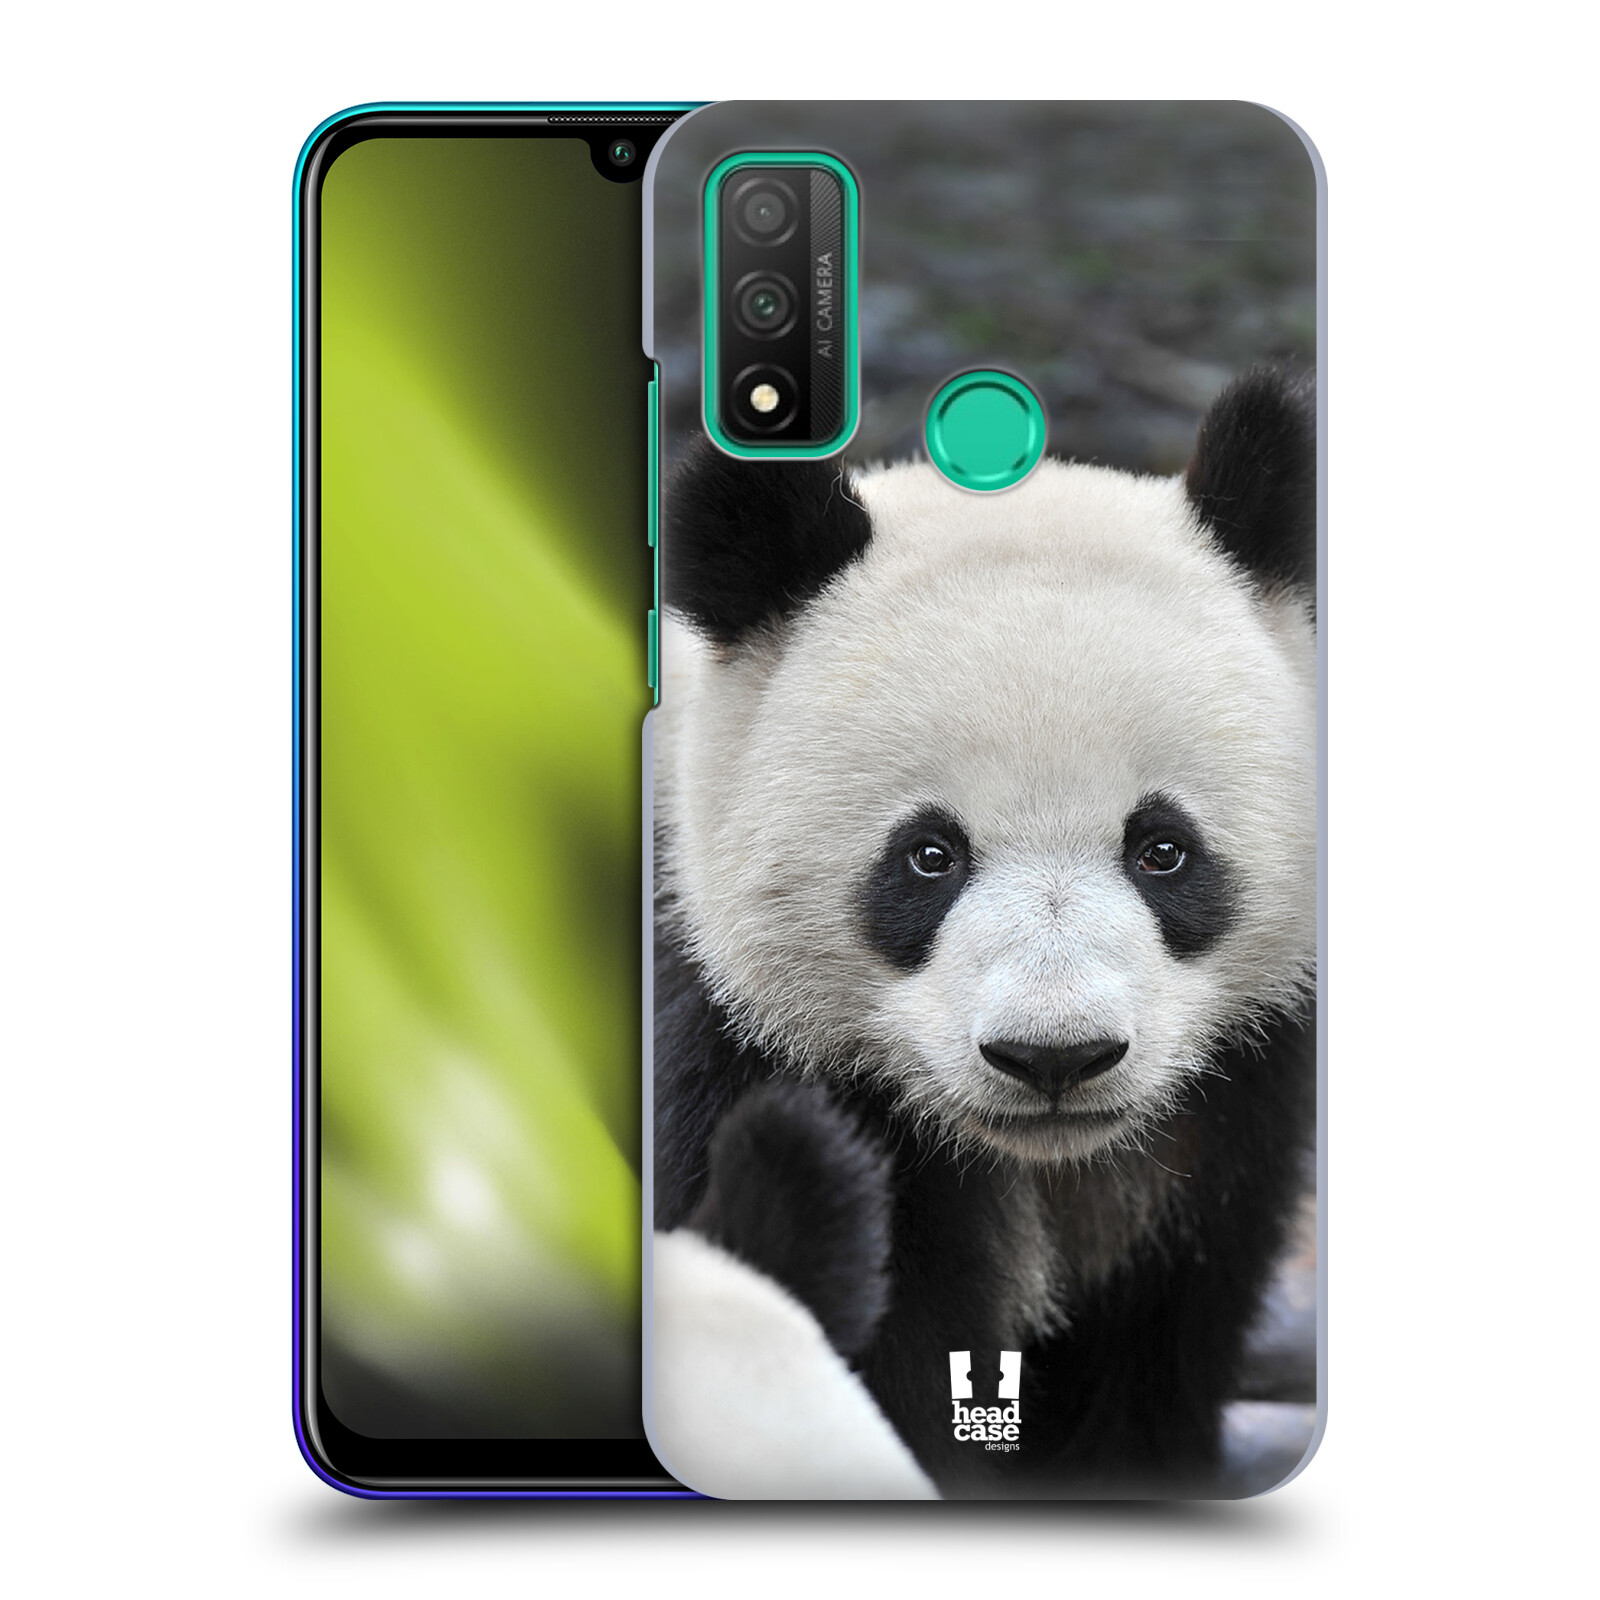 Zadní obal pro mobil Huawei P SMART 2020 - HEAD CASE - Svět zvířat medvěd panda